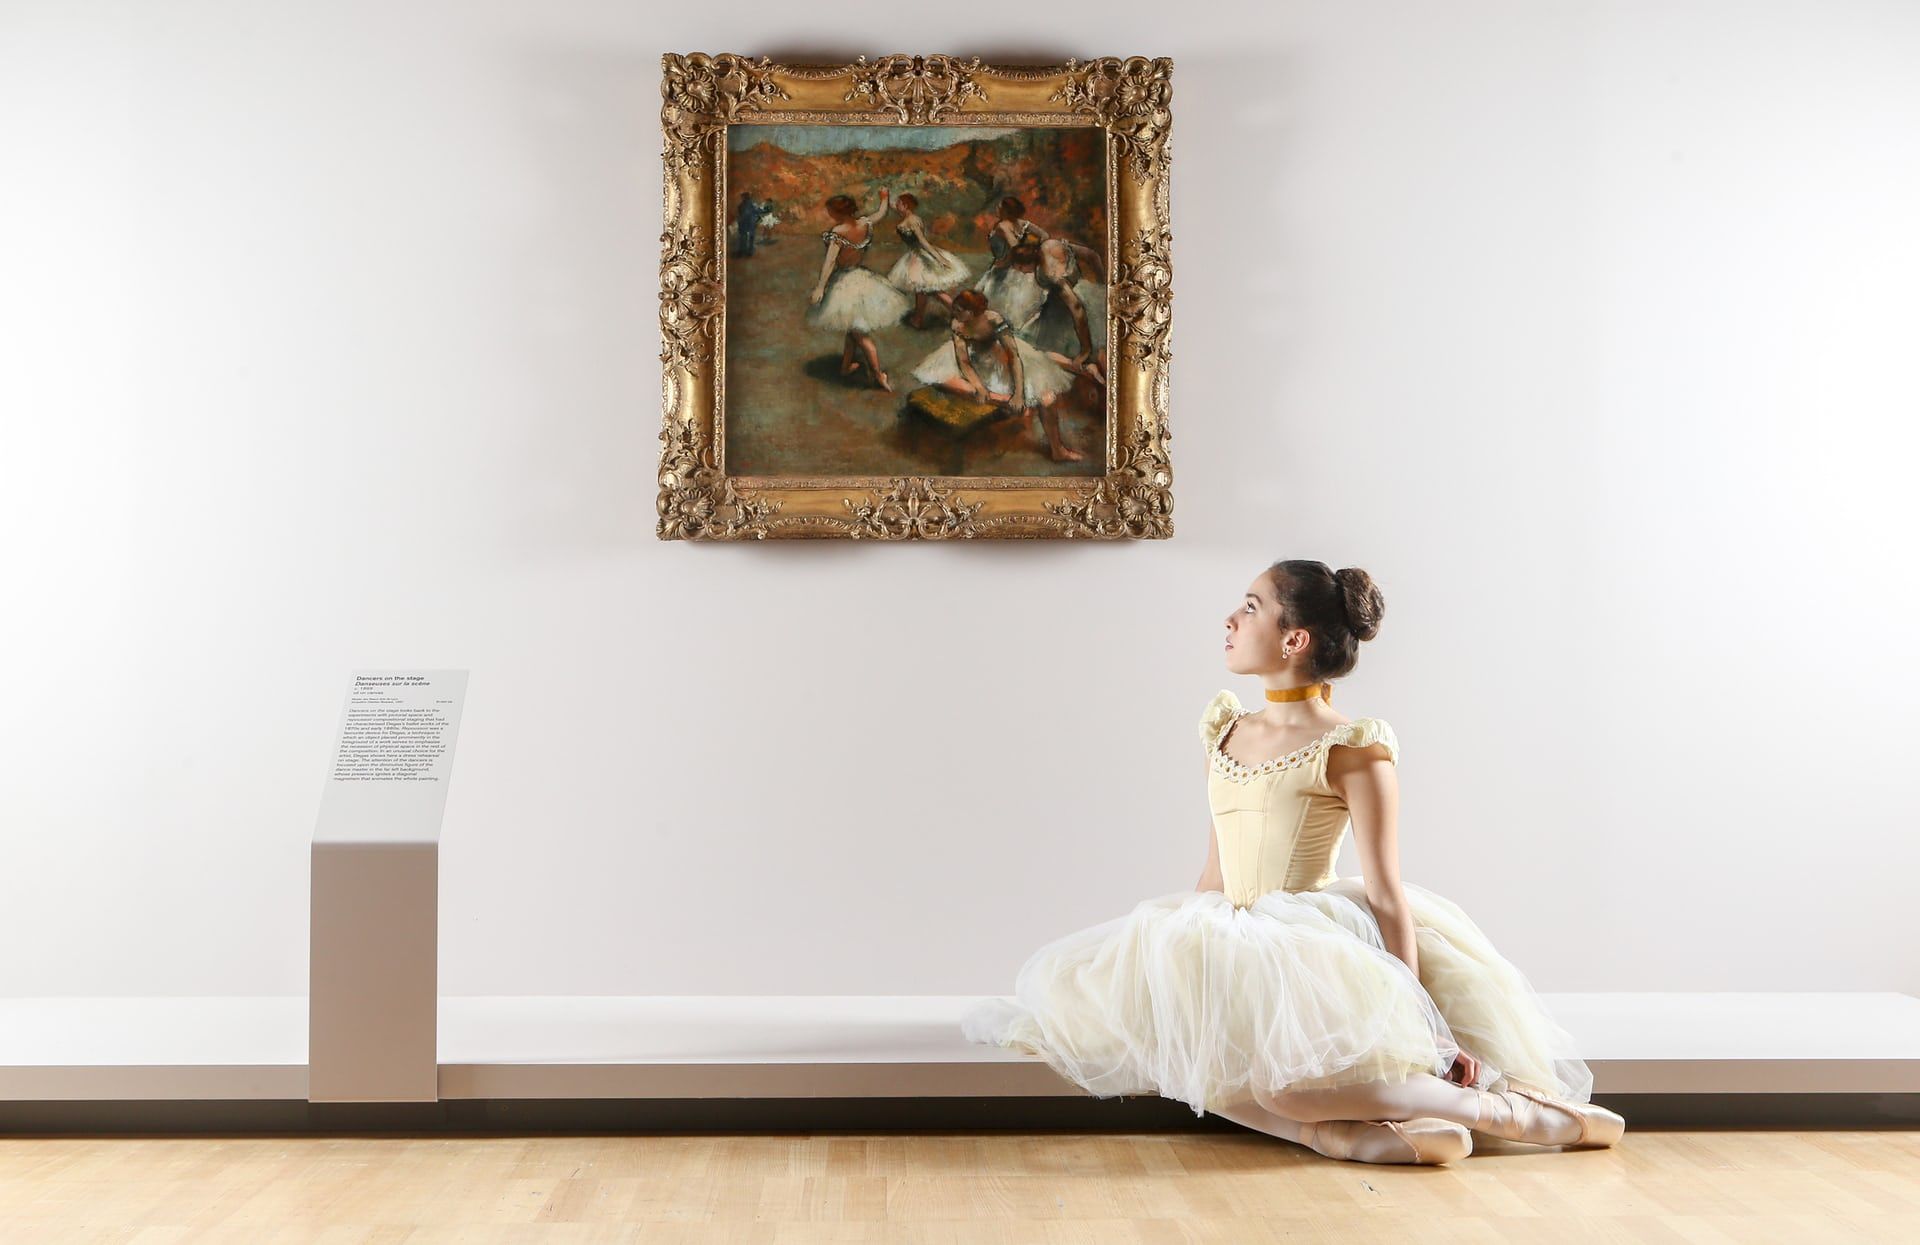 Evie Ferris of the Australian Ballet poses beside work by Edgar Degas at NGV International.jpg